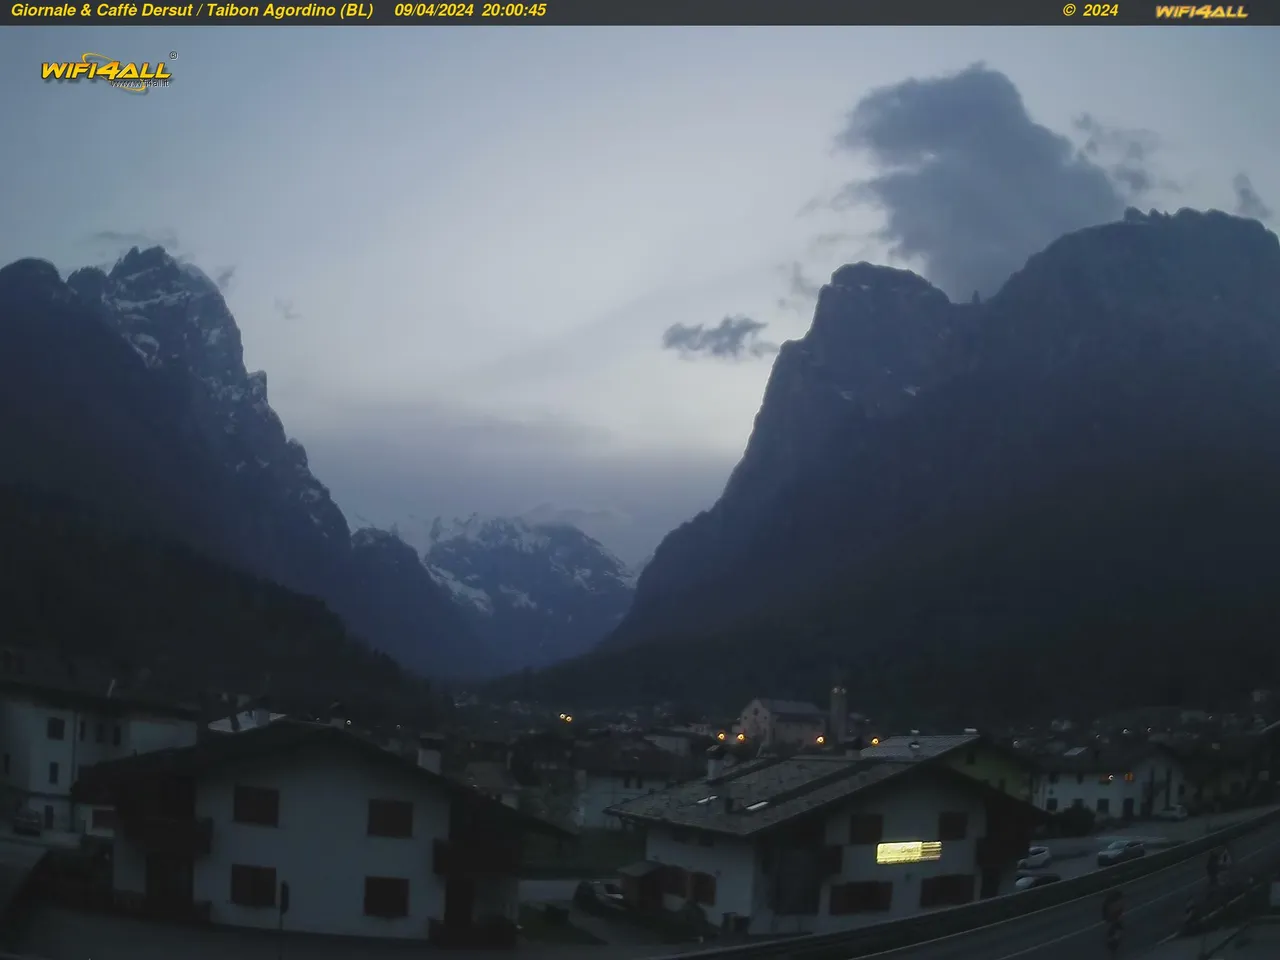 webcam Taibon Agordino,  webcam provincia di Belluno, 
                                            webcam Veneto, webcam alpi